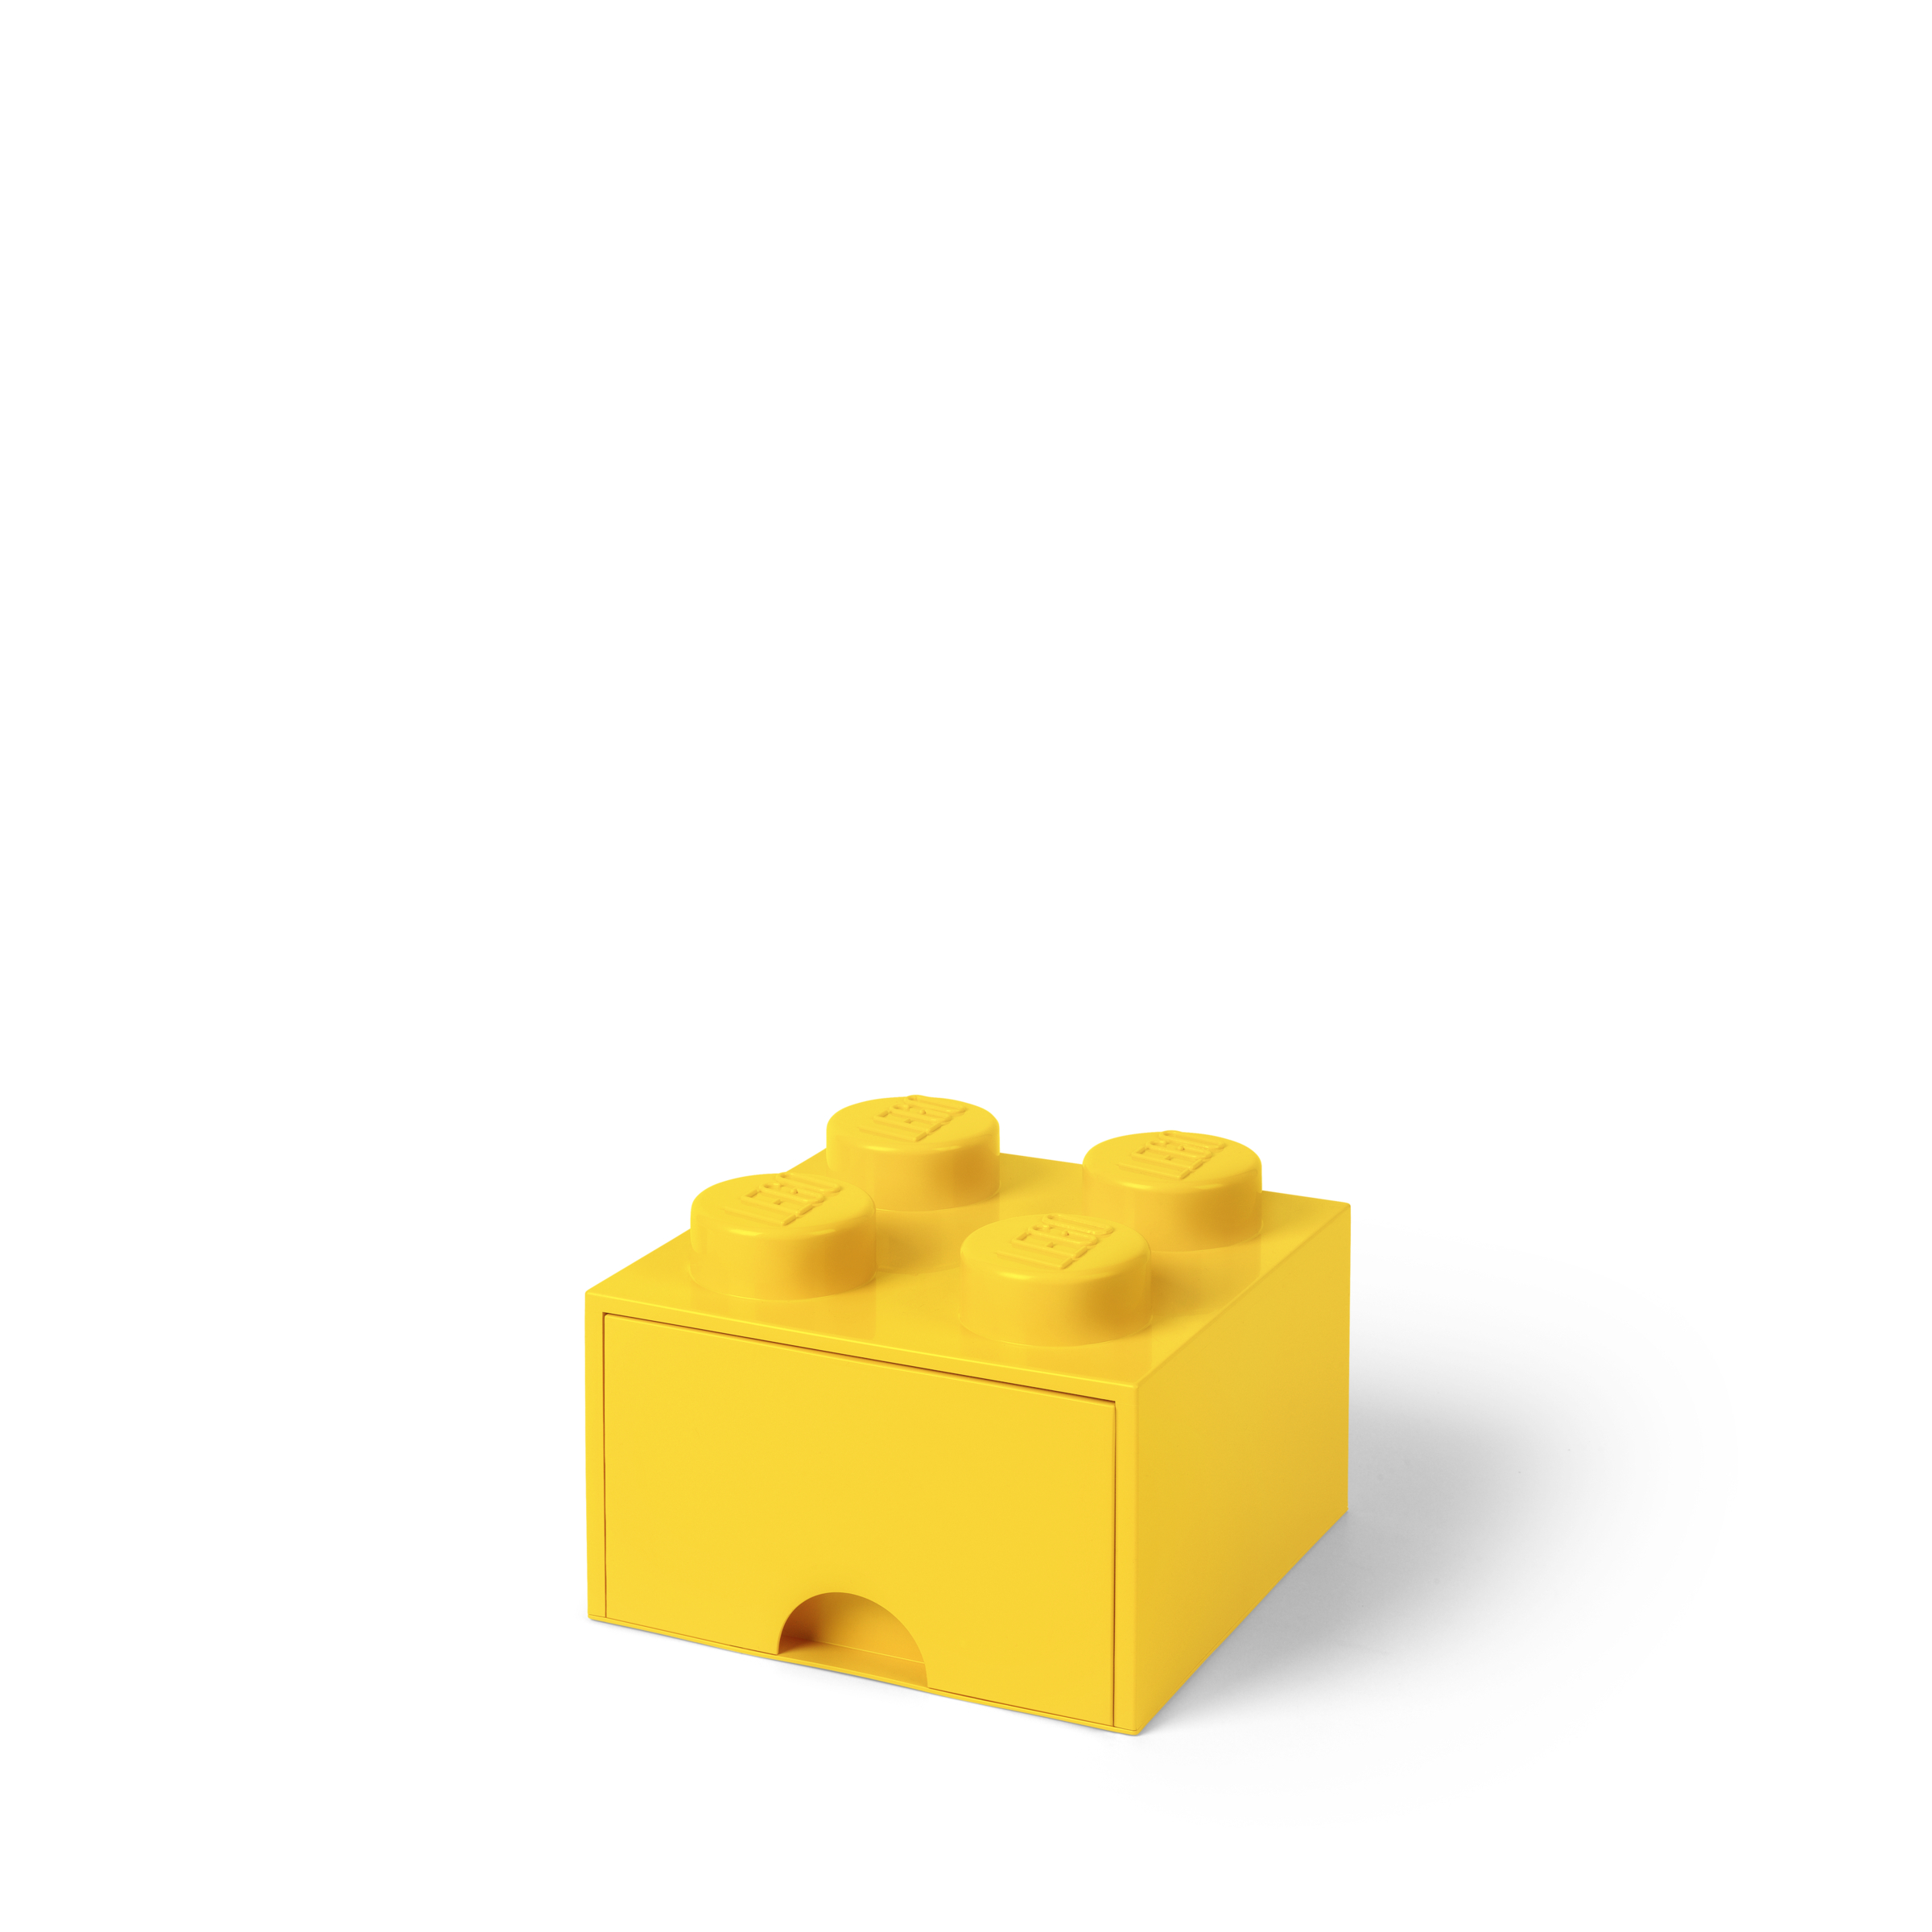 ΚΟΥΤΙ ΑΠΟΘΗΚΕΥΣΗΣ LEGO ΤΕΤΡΑΓΩΝΟ ΚΙΤΡΙΝΟ ΣΥΡΤΑΡΩΤΟ 25x25x18cm- 40051732